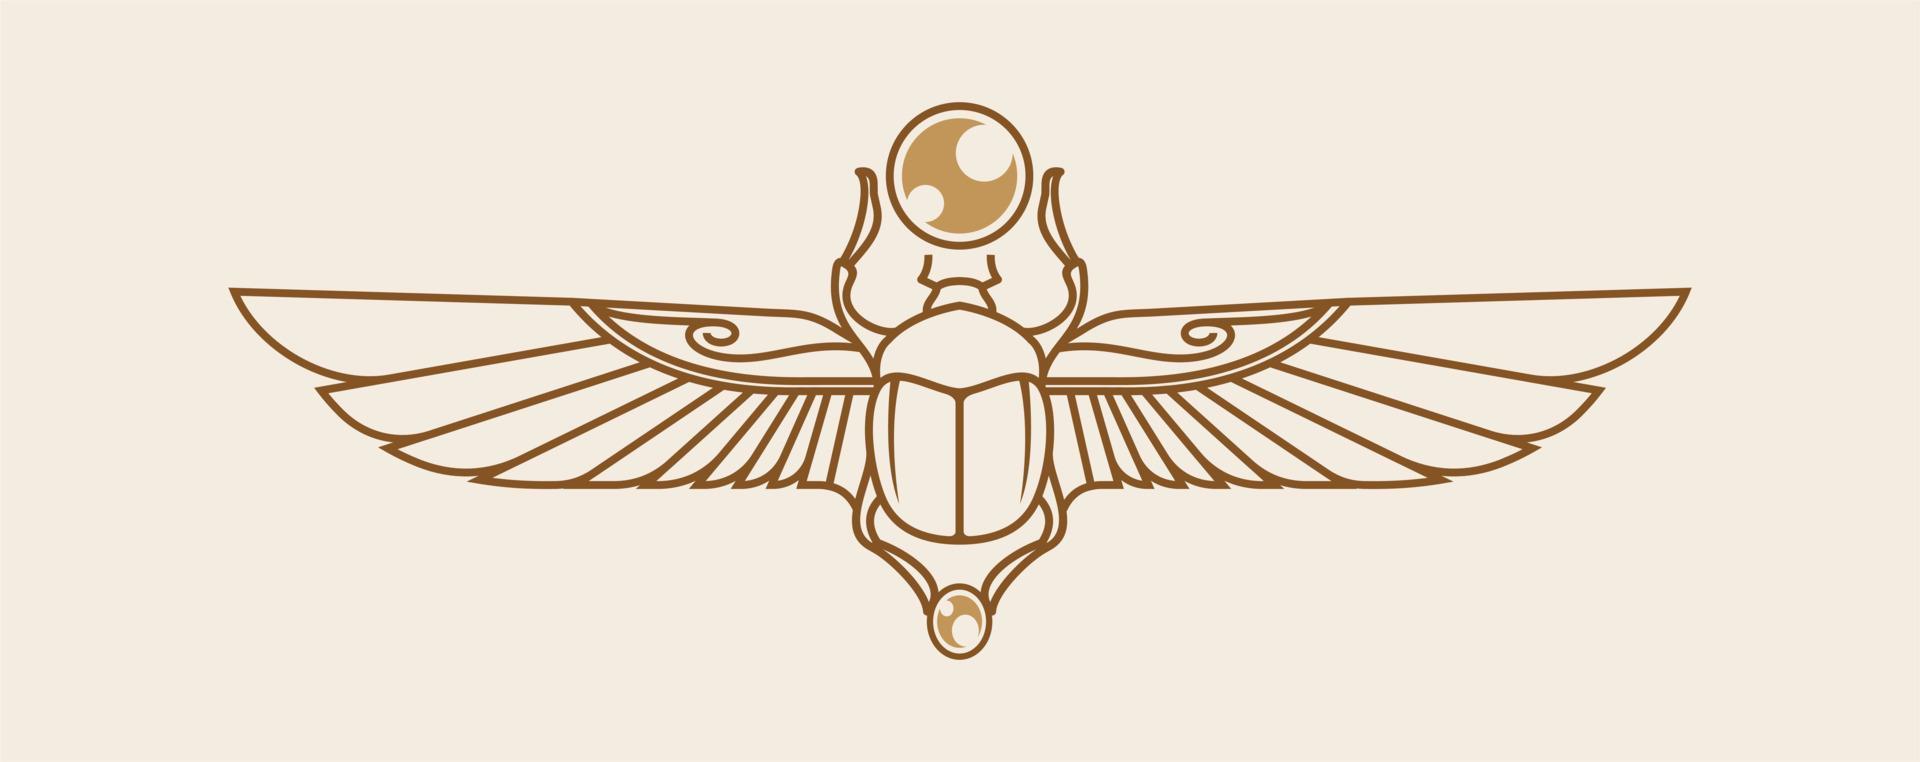 Skarabäus mit Flügelvektorillustration, altägyptisches Tier für Khepri, ägyptischer Gott. magisches symbol für pharao mit topografischem linienhintergrund. Ägypten Mythologie Tattoo-Design vektor